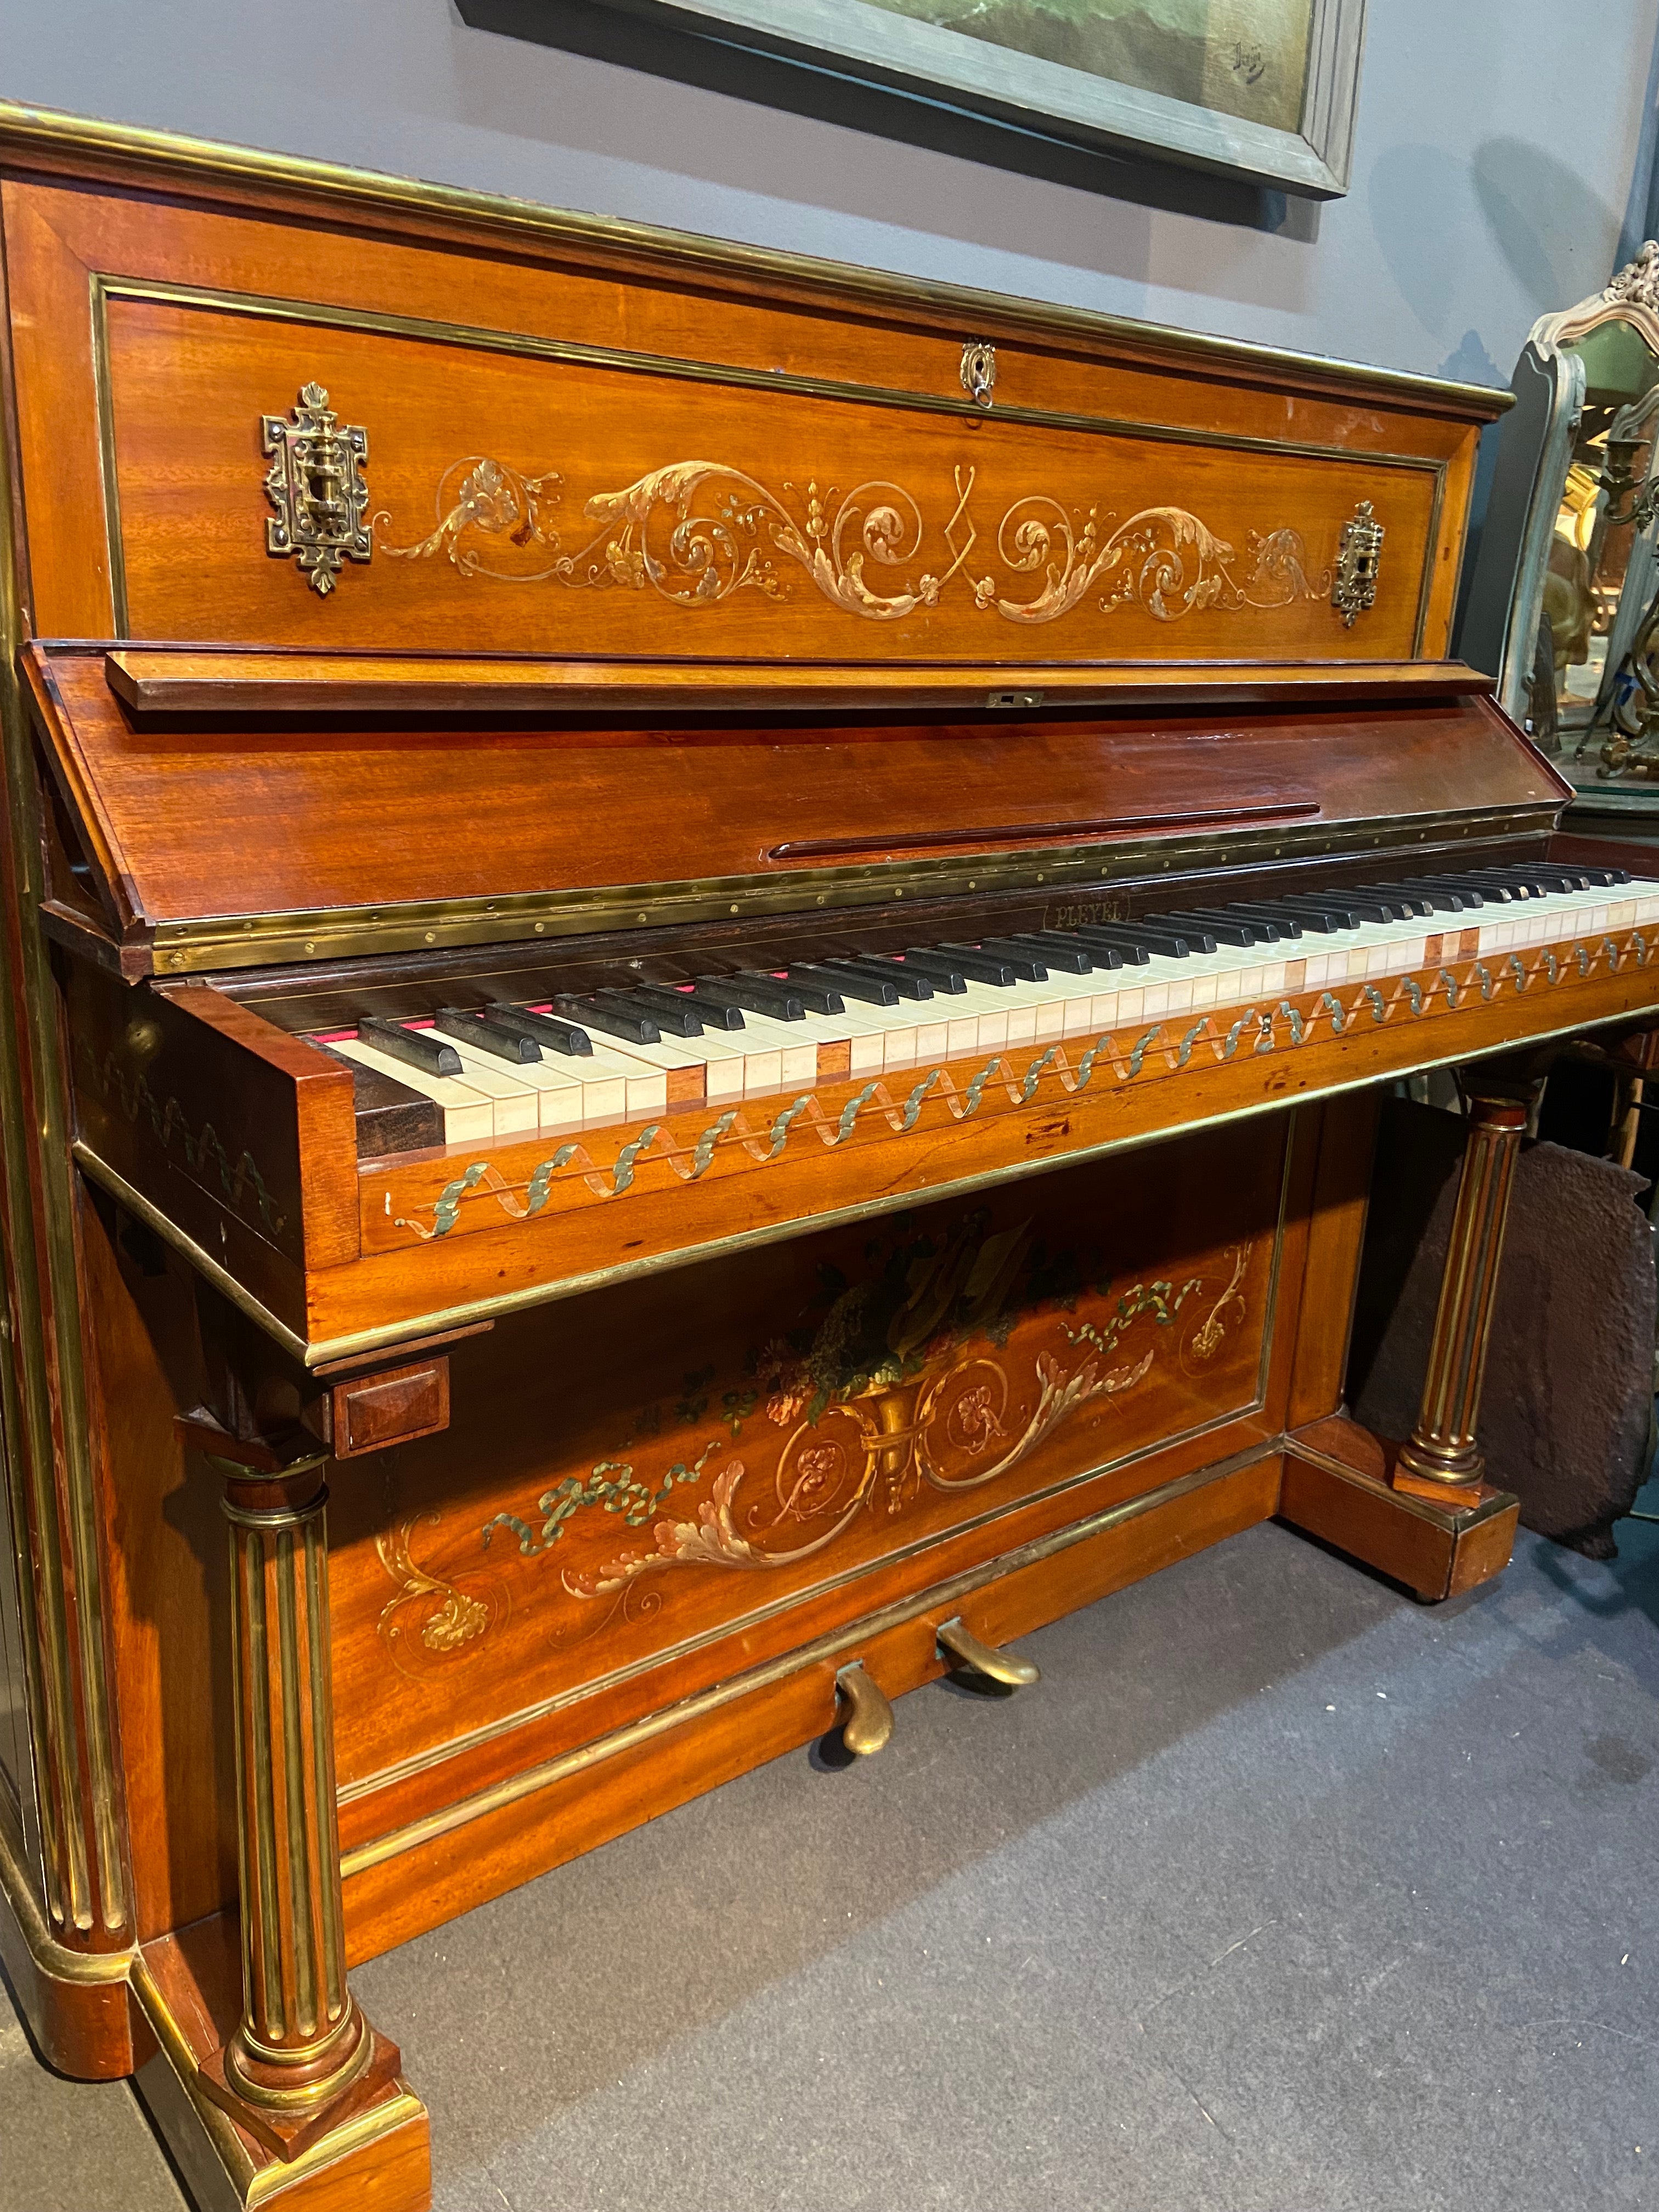 Ce rare piano droit a été fabriqué par Pleyel en France en septembre 1871 selon les archives Pleyel trouvées au Musée de la Musique.
Le meuble en bois naturel est magnifiquement décoré de guirlandes florales peintes à la main. Les côtés du piano